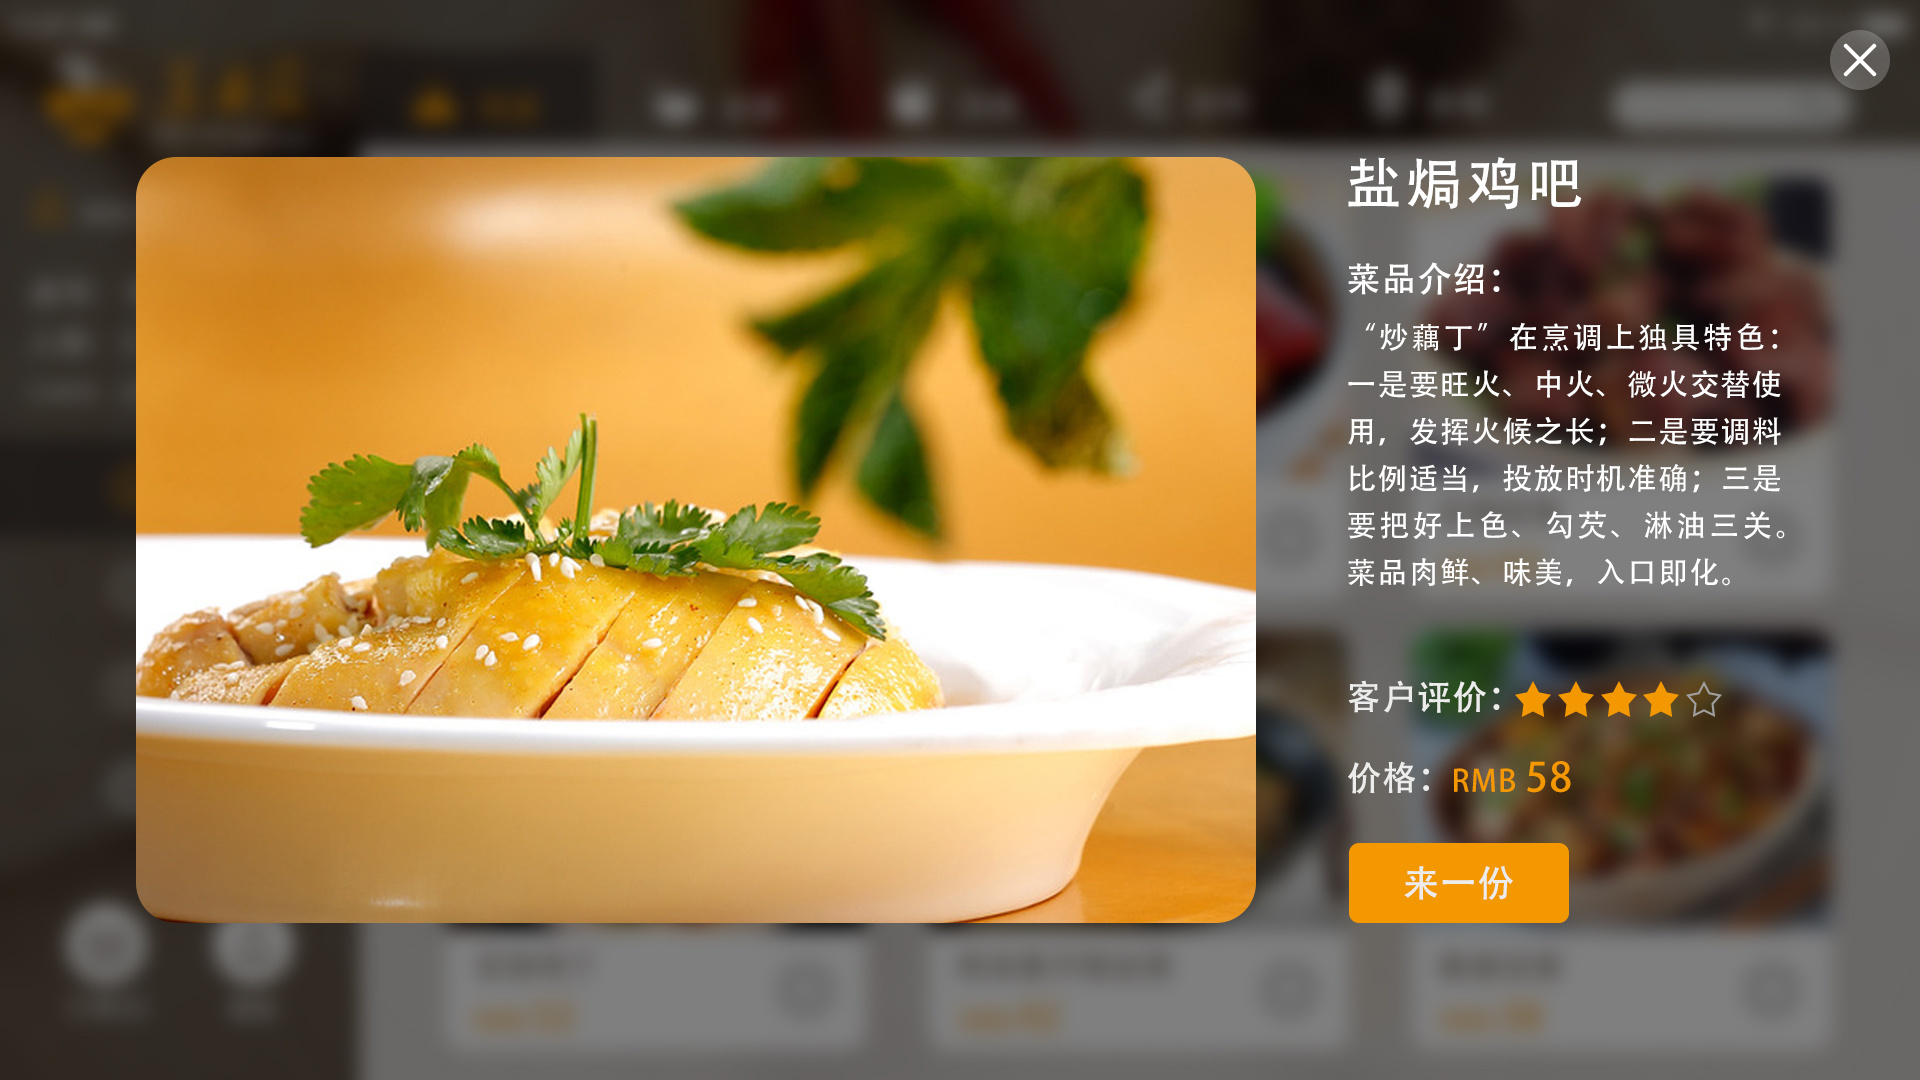 安卓手机点餐系统：变革传统点菜模式，带来全新餐饮体验  第5张